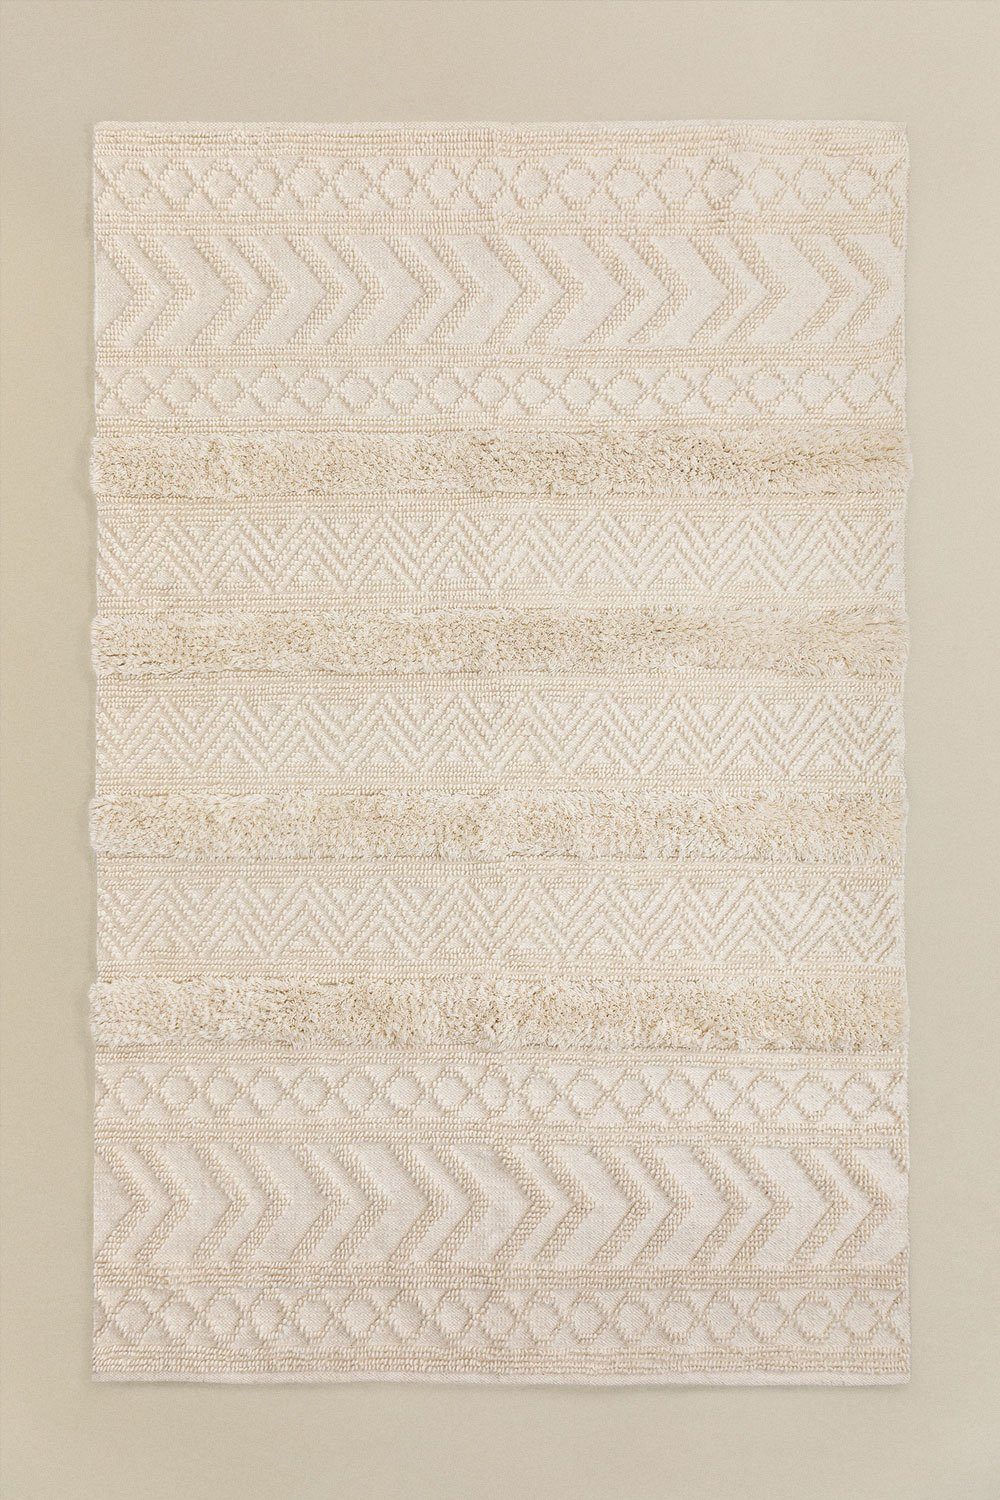 Designteppich Teppich aus Wolle und Baumwolle (255x165 cm) Lissi, Aesthetic Living